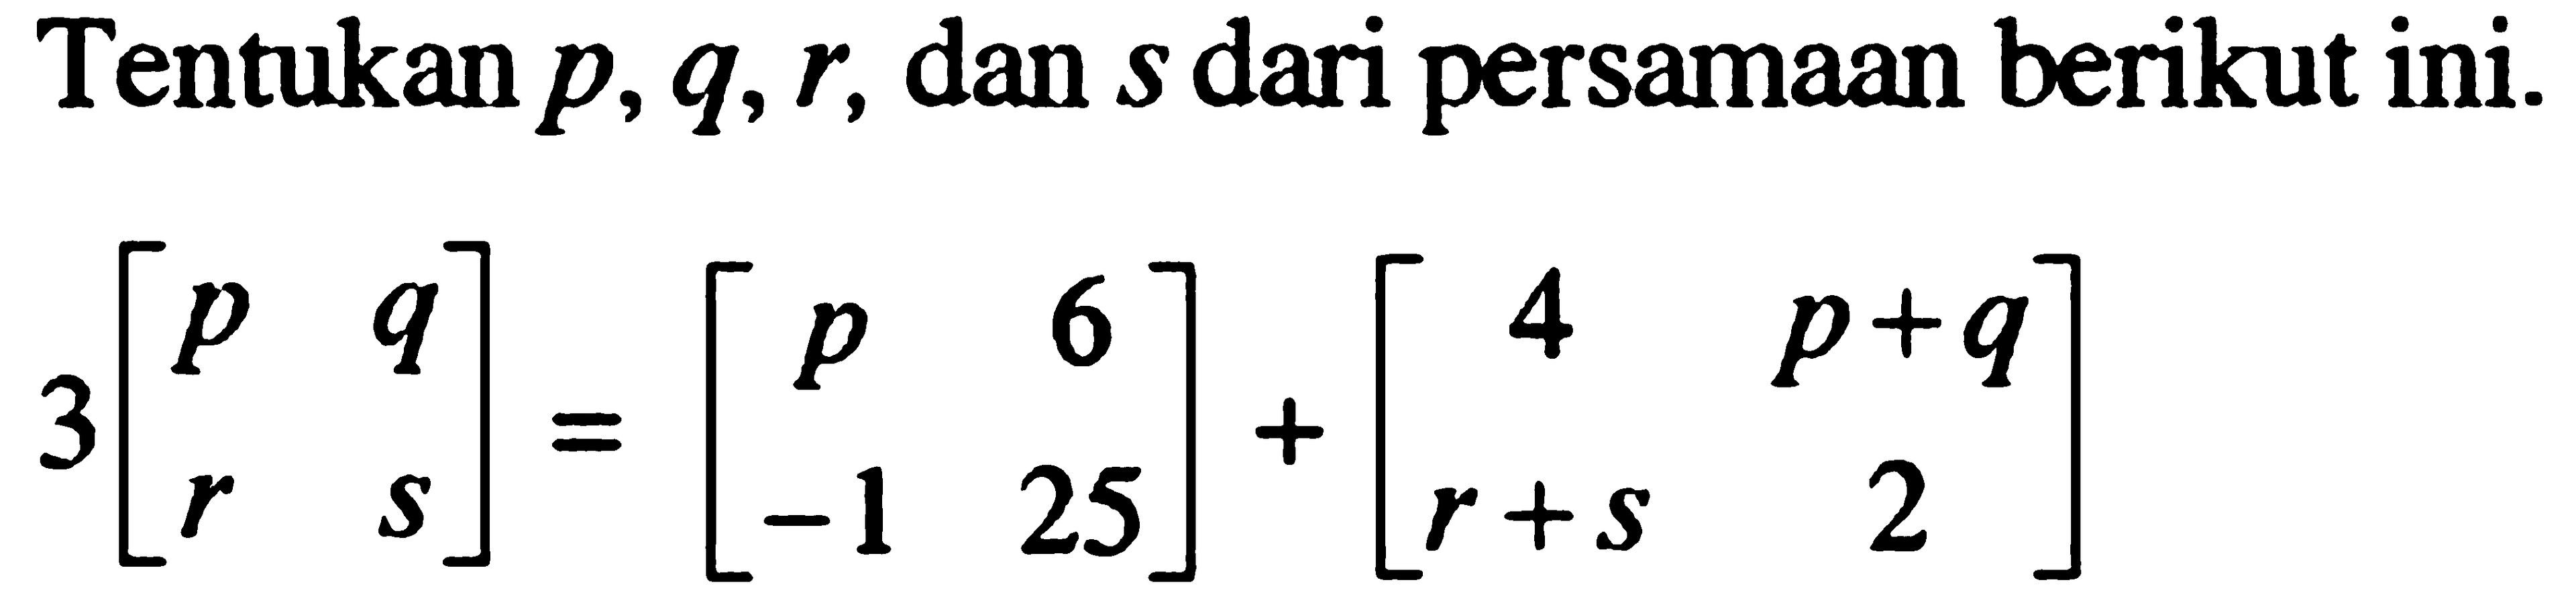 Tentukan p, q, r, dan s dari persamaan berikut ini. 3[p q r s] = [p 6 -1 25] + [4 p+q r+s 2]